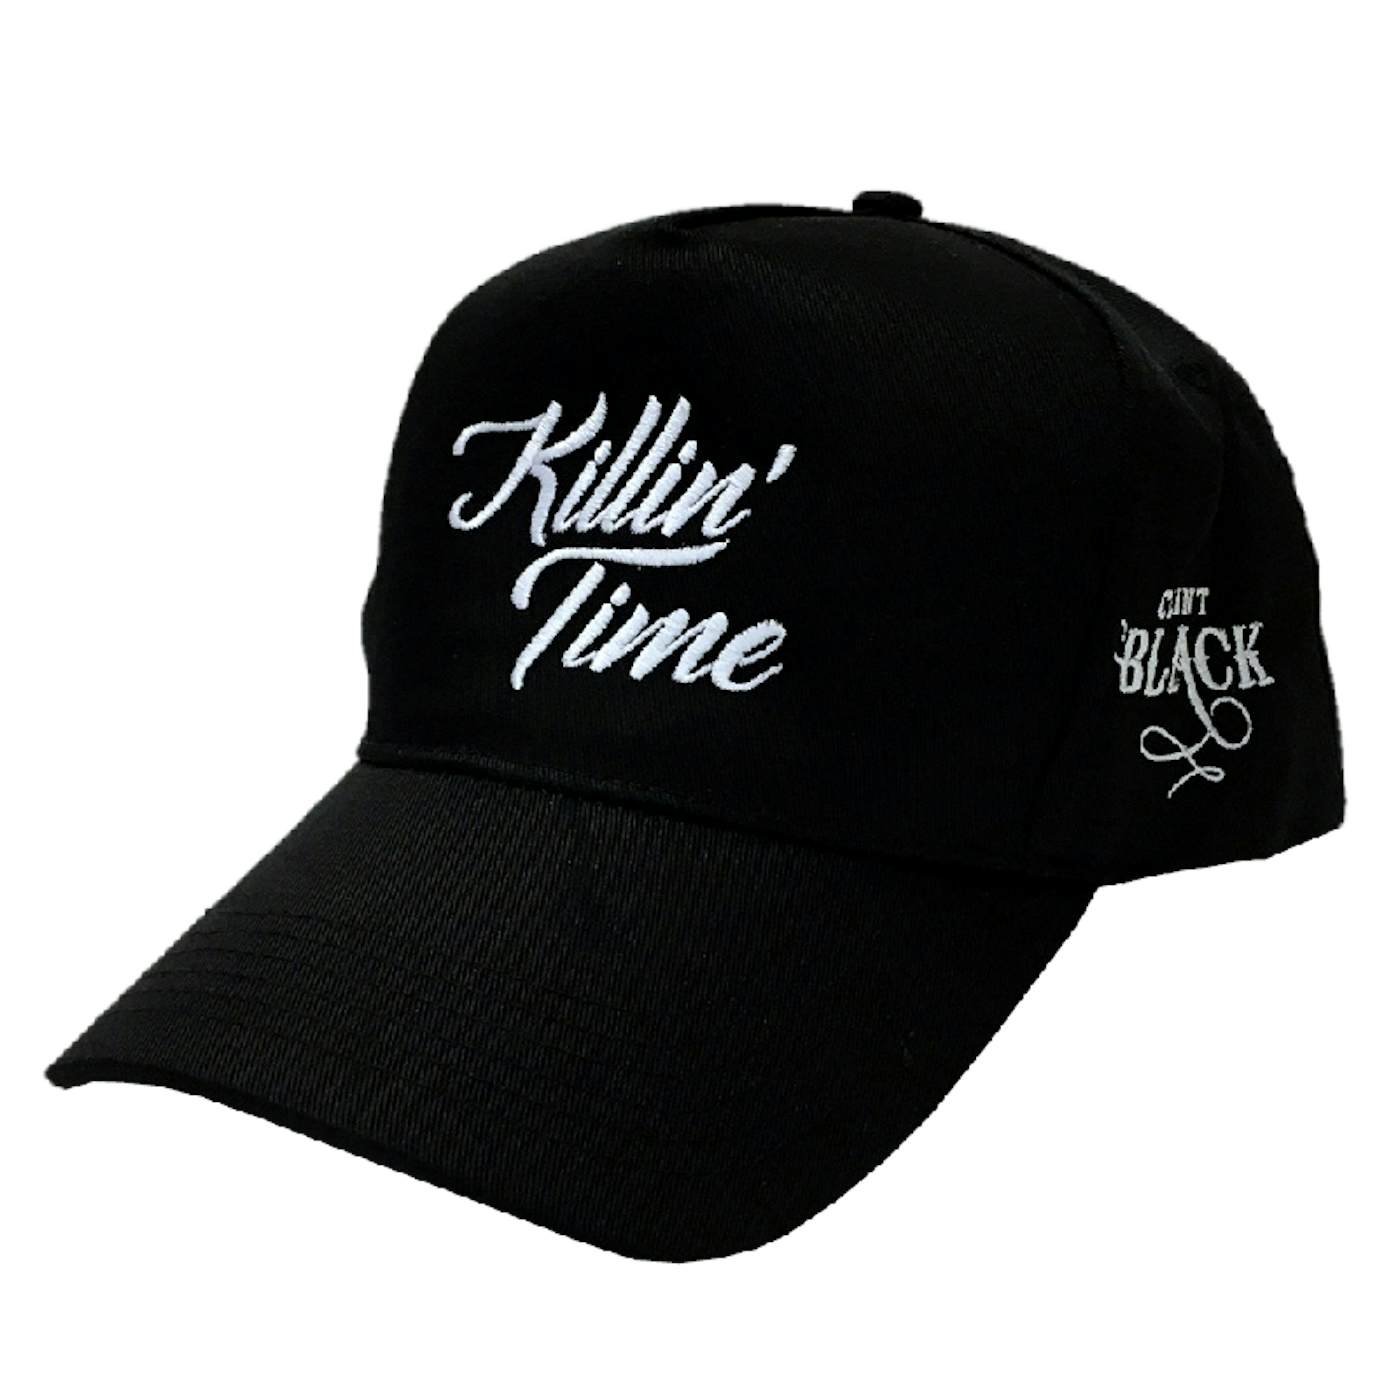 Clint Black Black Killin' Time Ballcap